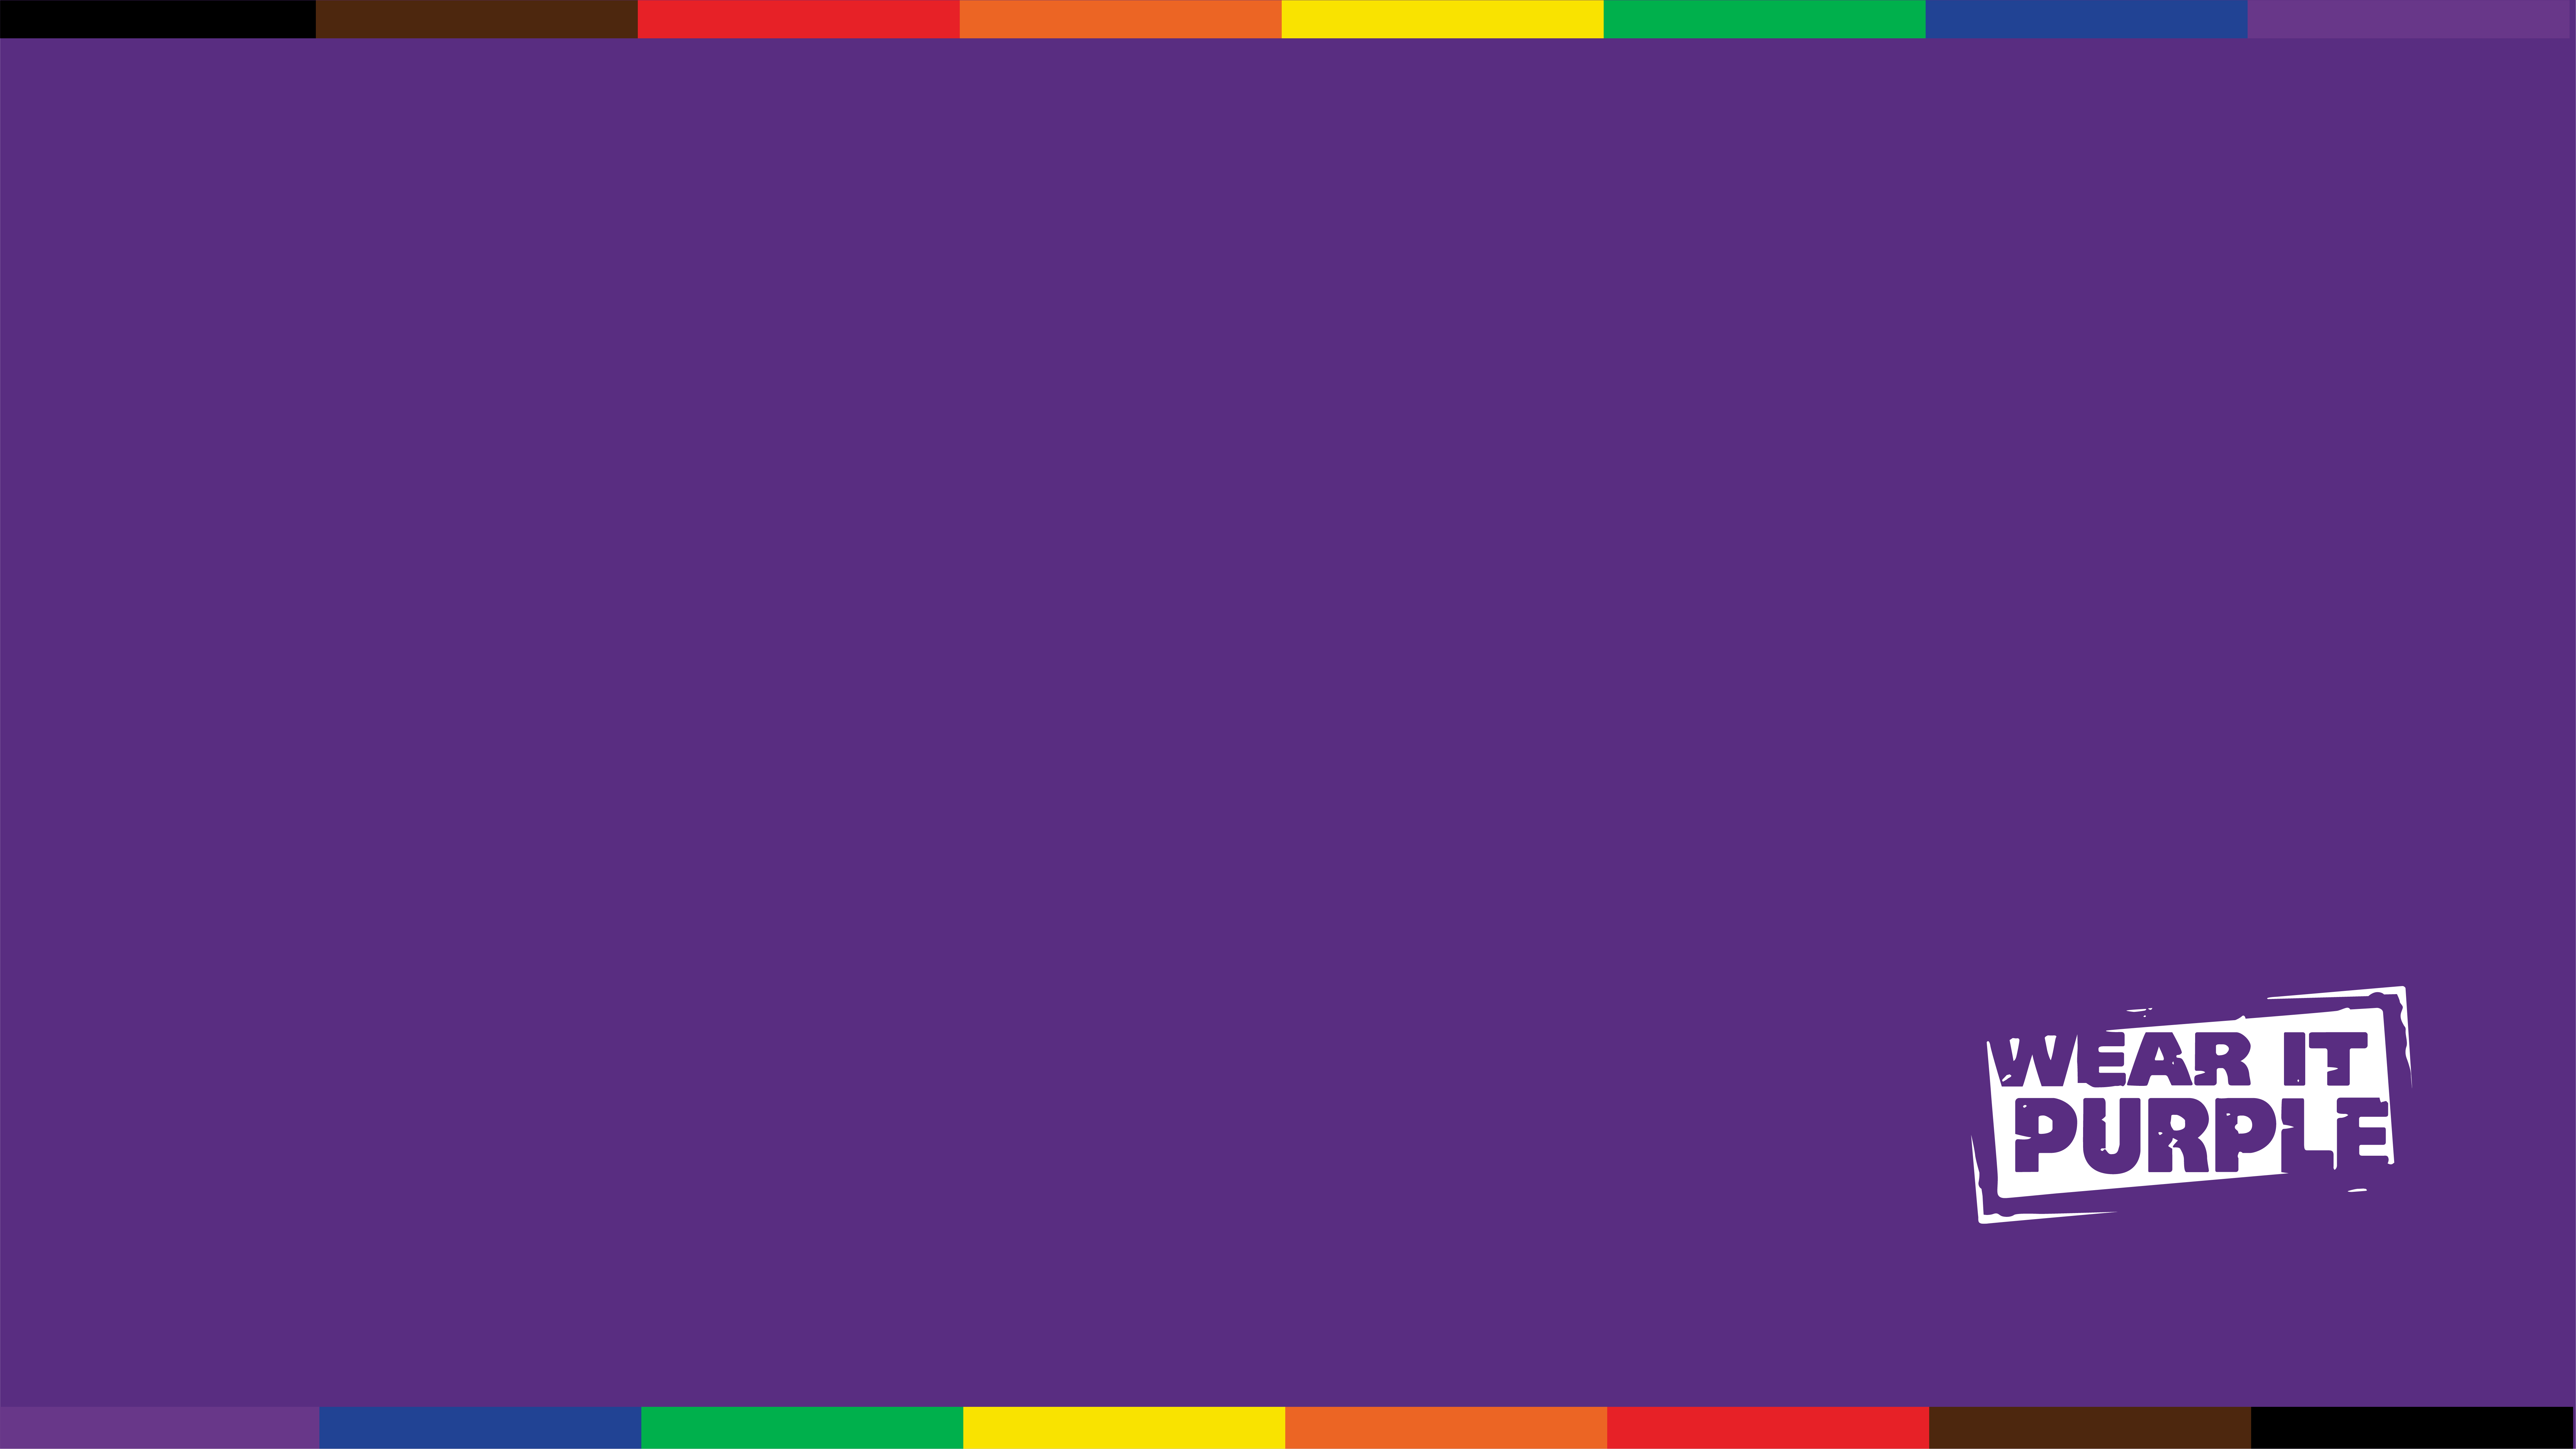 Chấm dứt năm học với một bức hình nền Wear It Purple tuyệt đẹp khi tham gia hội nghị trực tuyến hoặc các cuộc họp video khác. Giữ mặt máy tính của bạn lạc quan và sôi động với hình nền Wear It Purple teams background.